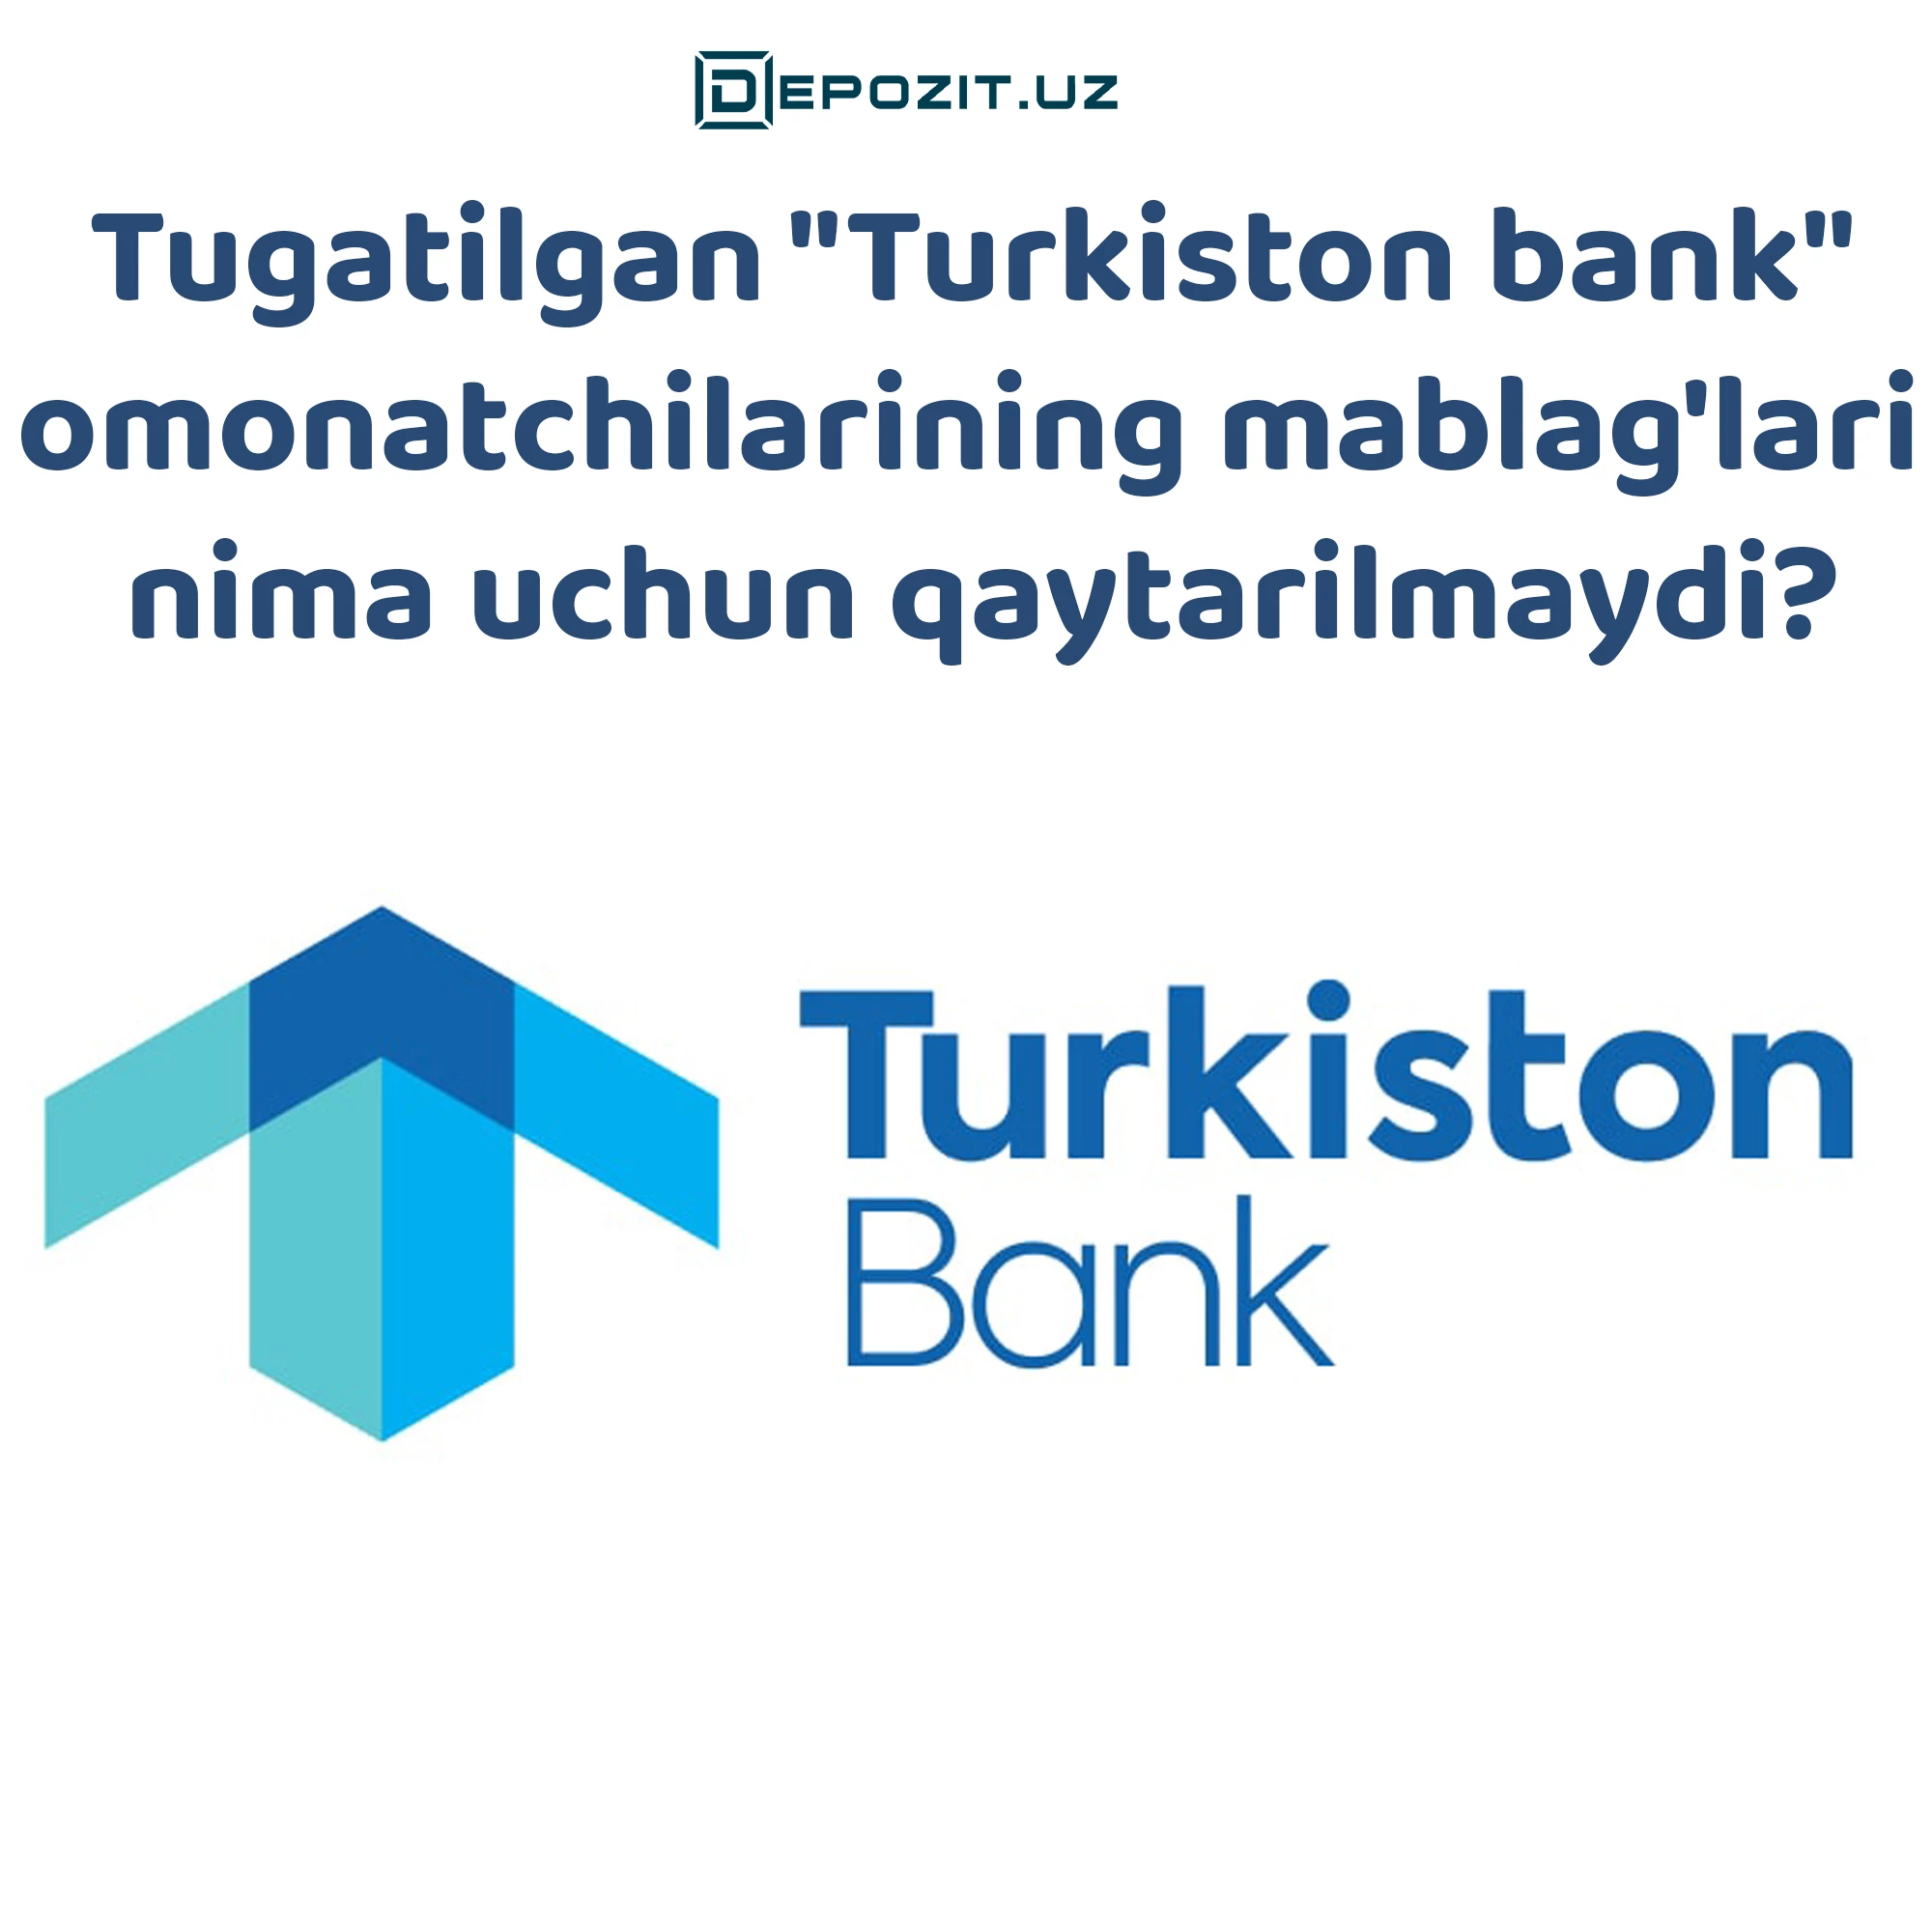 Tugatilgan "Turkiston bank" omonatchilarining mablag'lari nima uchun qaytarilmaydi?